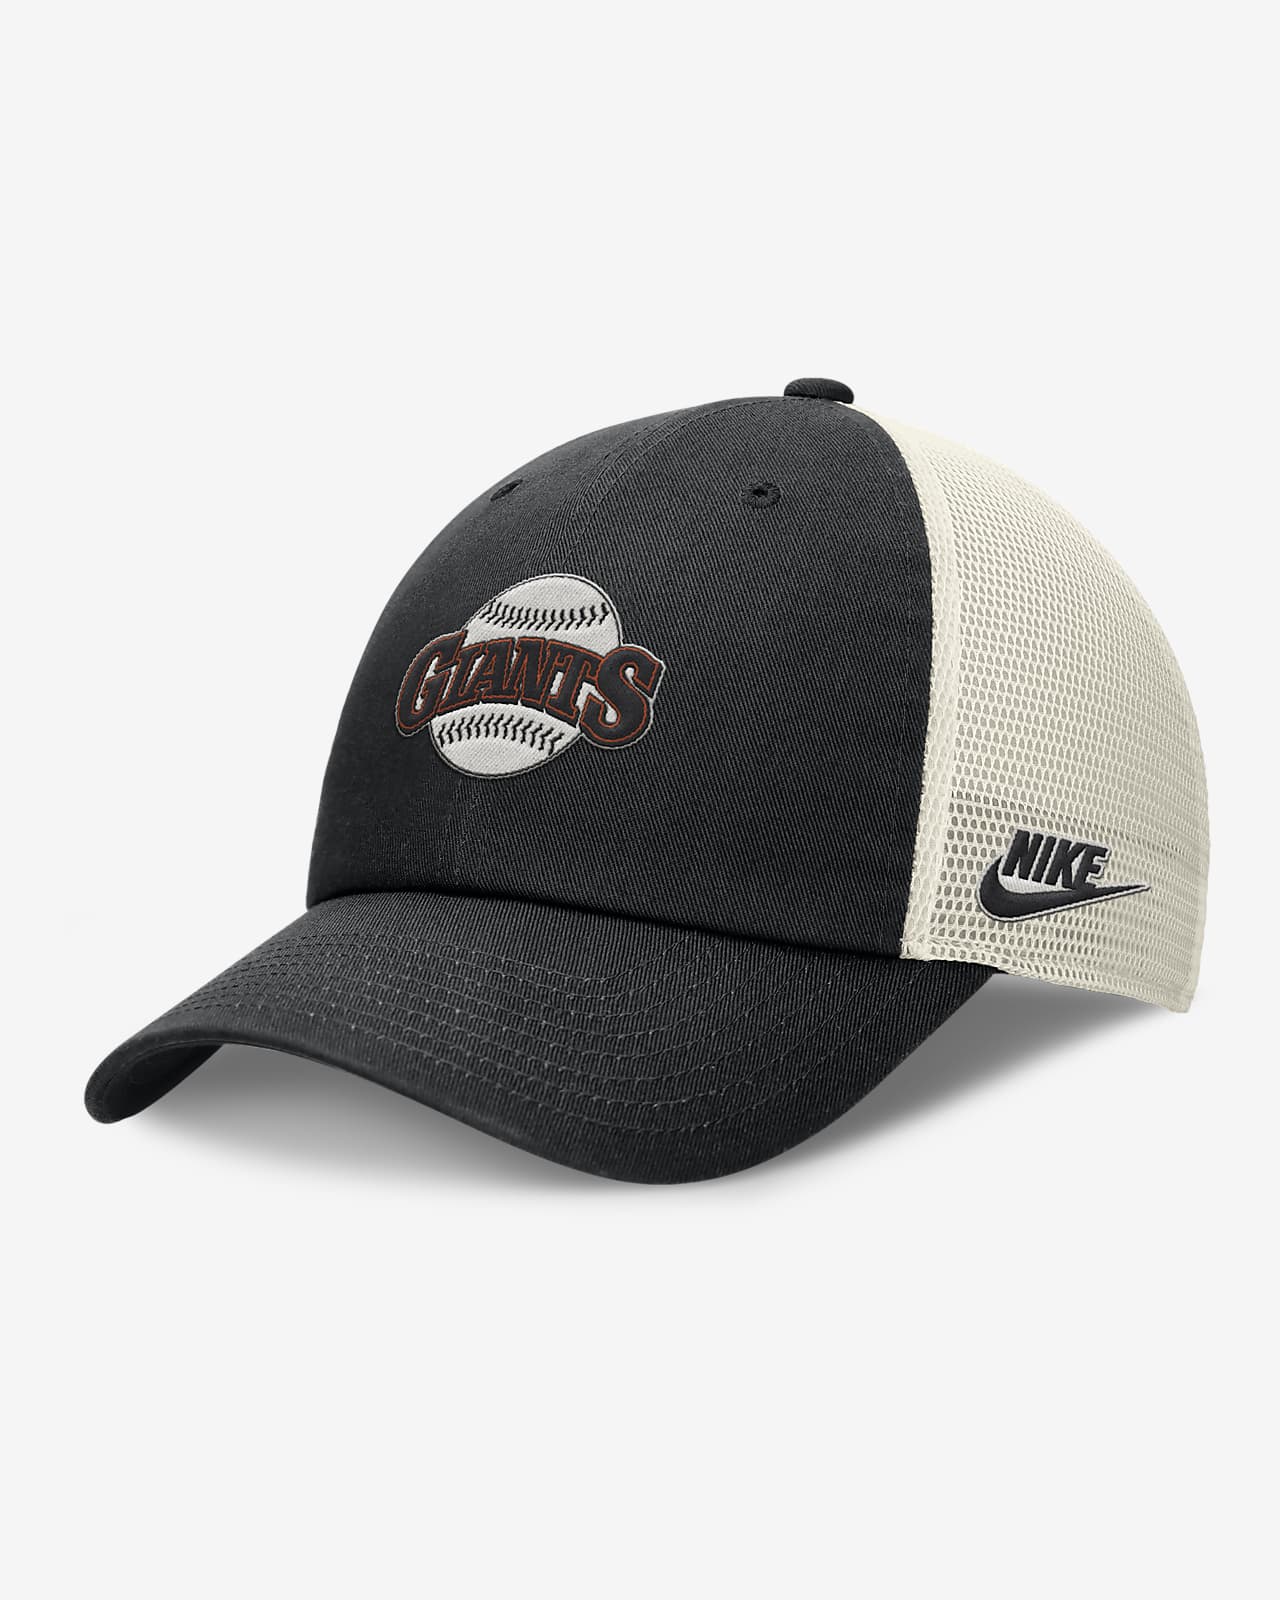 San Francisco Giants Rewind Cooperstown Club Men's Nike MLB Trucker Adjustable Hat